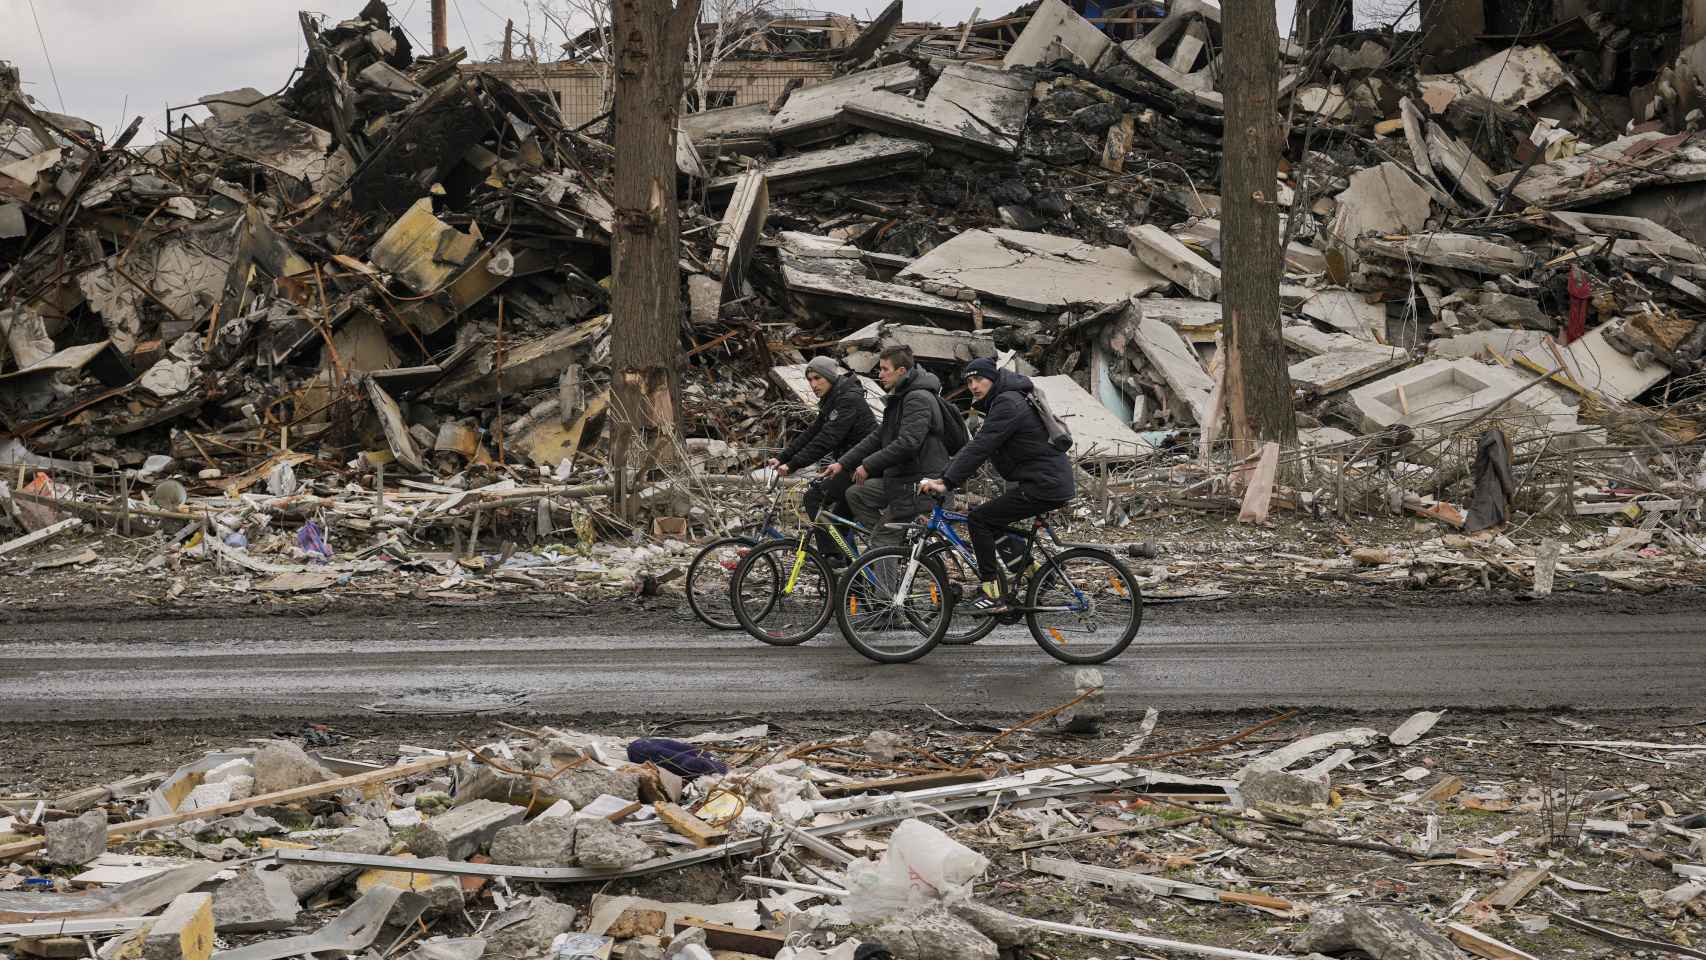 Tres civiles ucranianos pasean en bicicleta entre los escombros.